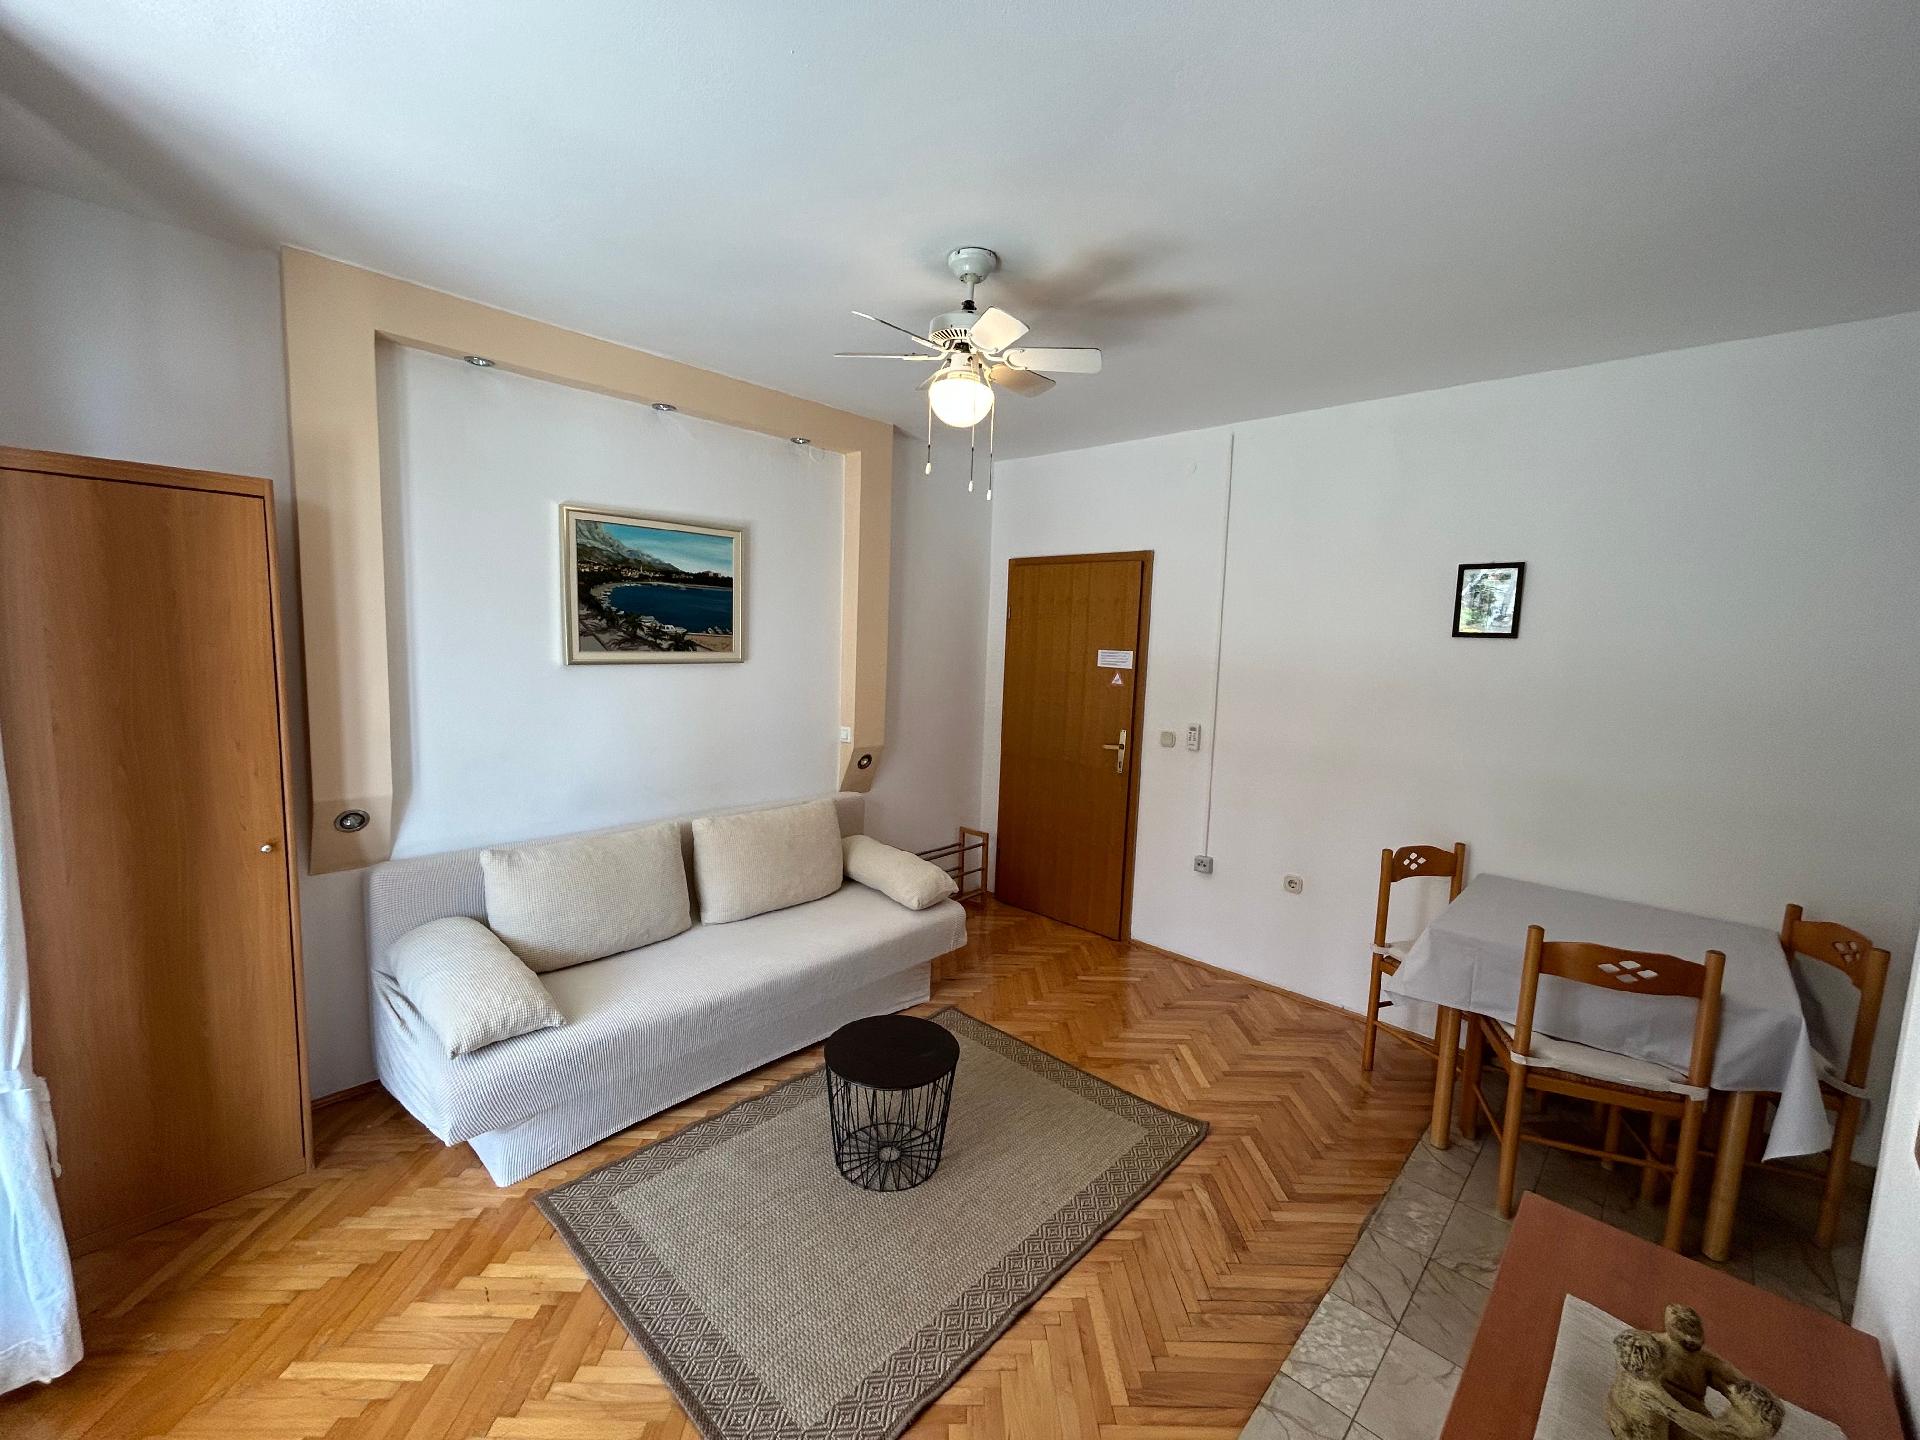 Ferienwohnung für 4 Personen ca. 43 m² i Ferienwohnung in Dalmatien